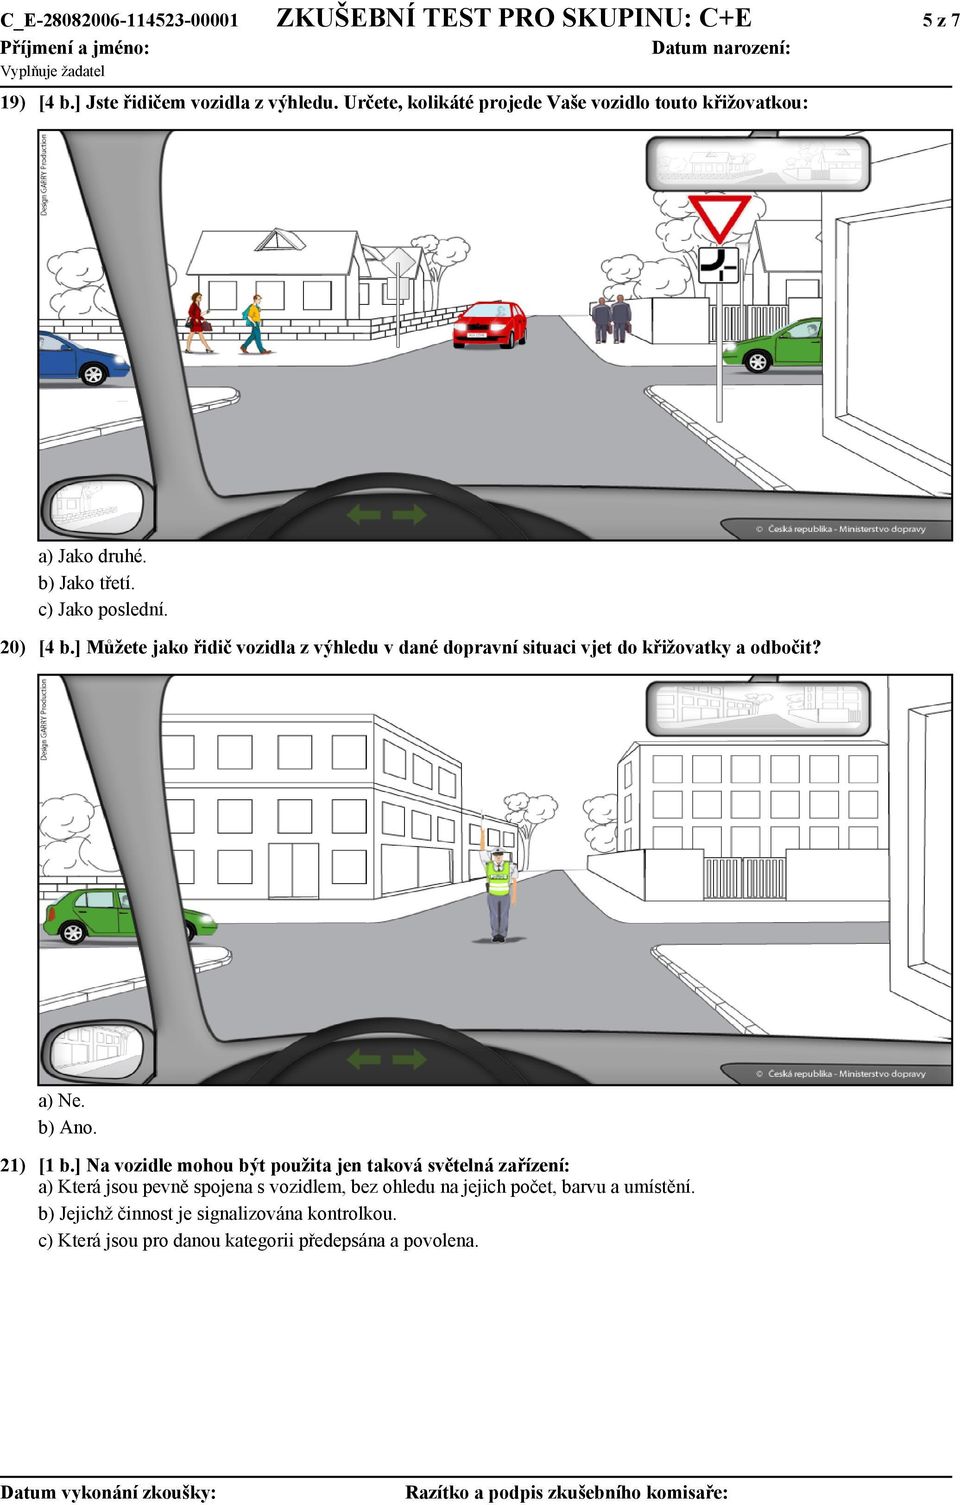 ] Můžete jako řidič vozidla z výhledu v dané dopravní situaci vjet do křižovatky a odbočit? a) Ne. b) Ano. 21) [1 b.